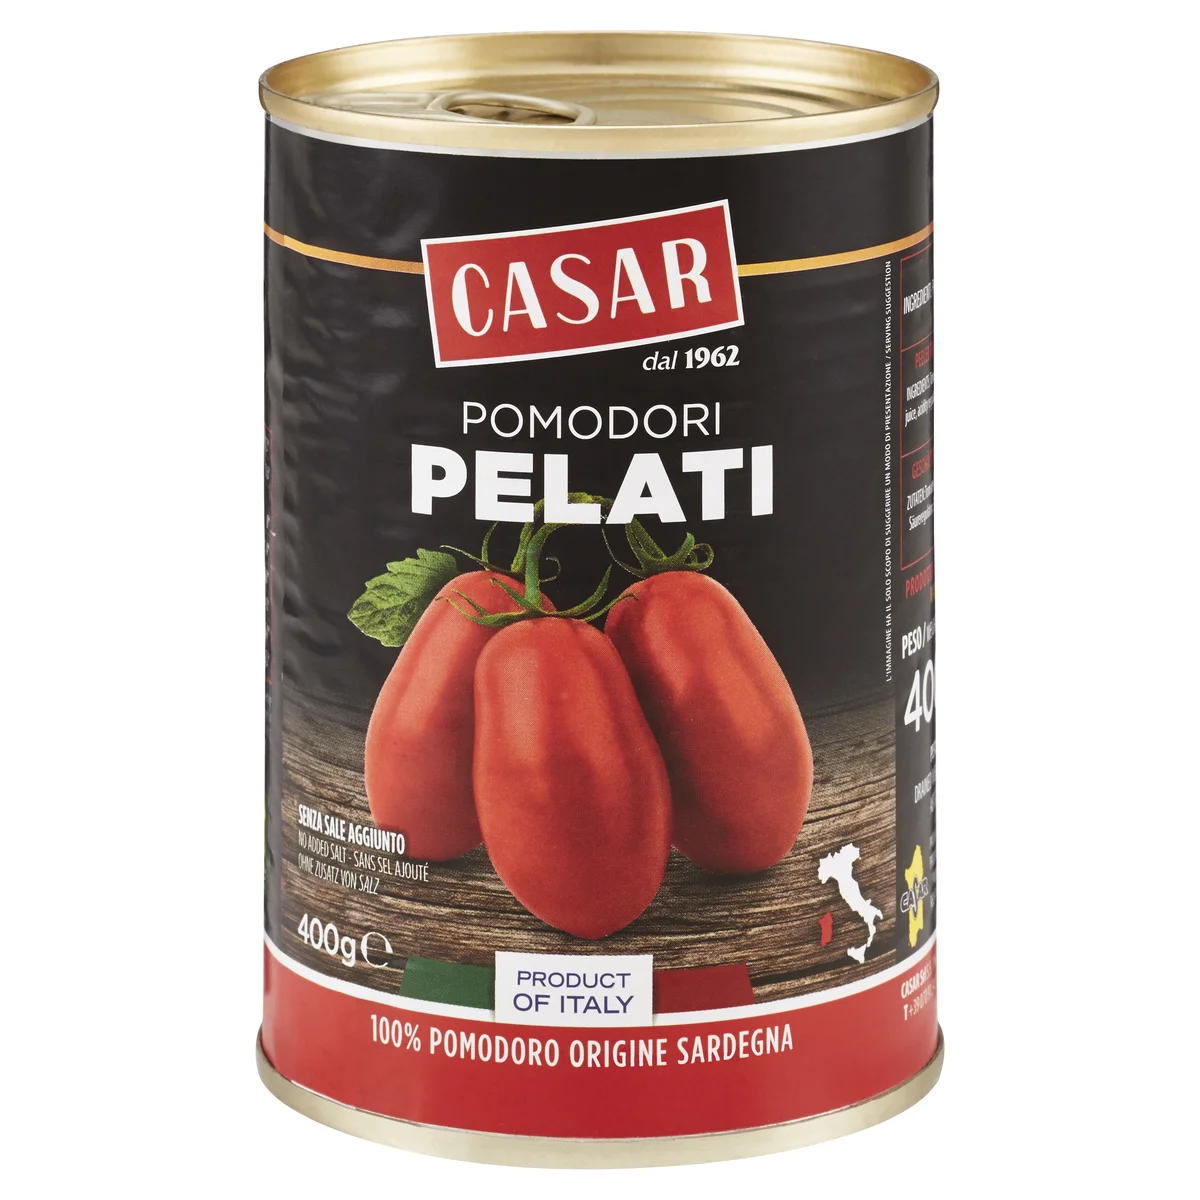 Casar Pomodori Pelati 400 g